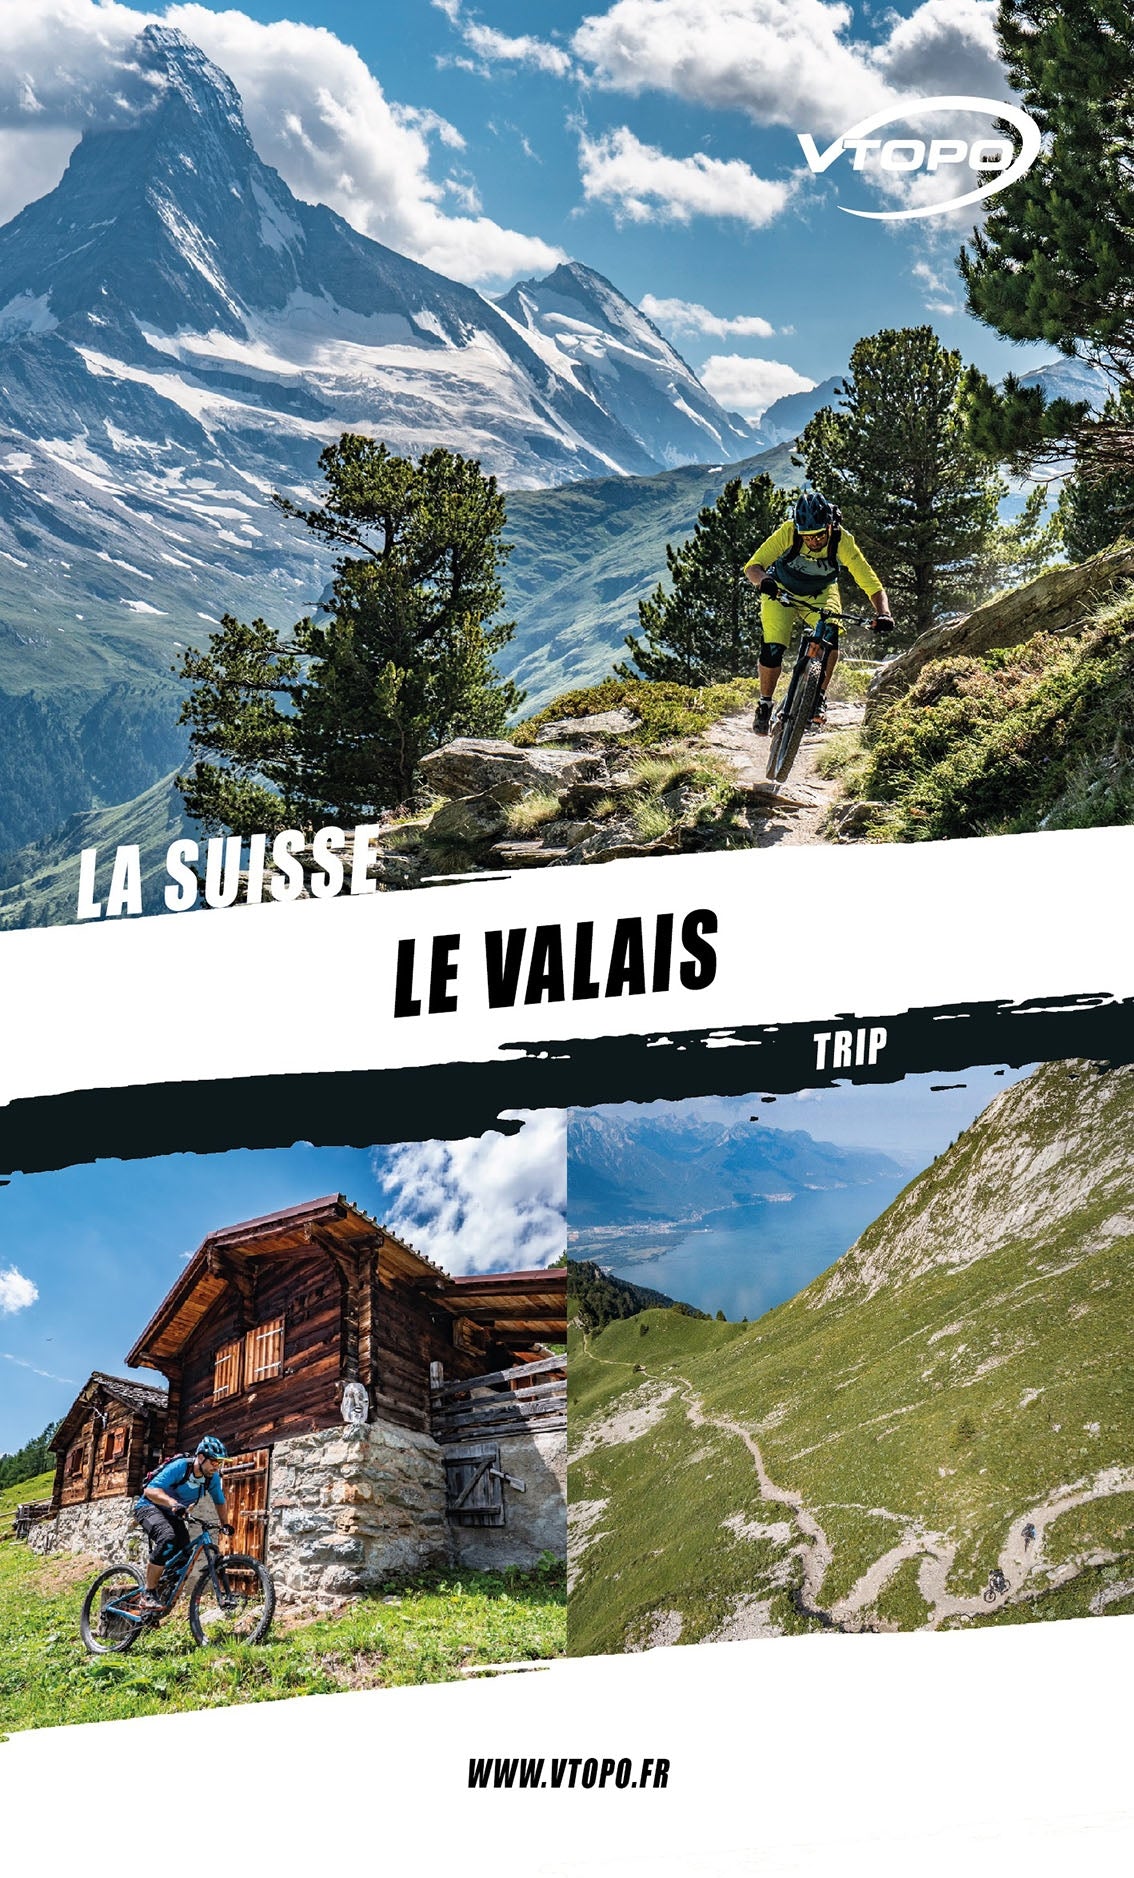 VTOPO VTT Trip Suisse Valais - Livre Numérique